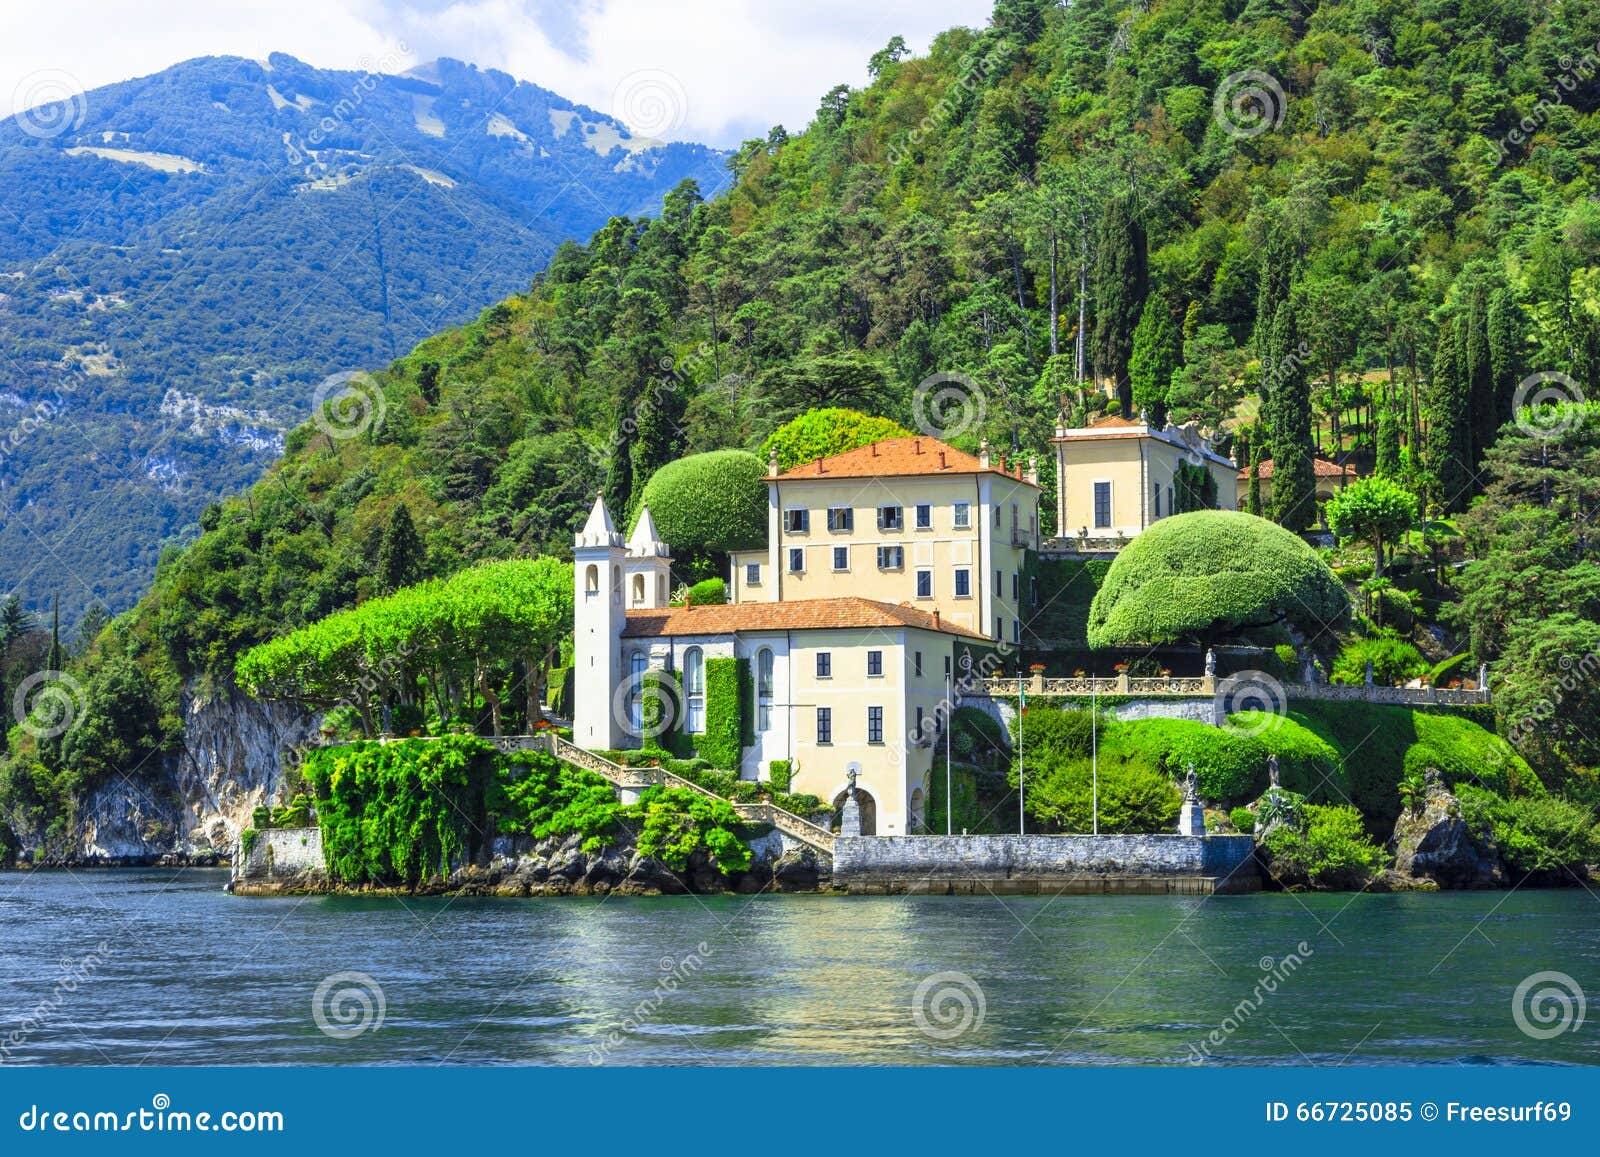 Qué ver en el Lago di Como: descubre las mejores rutas